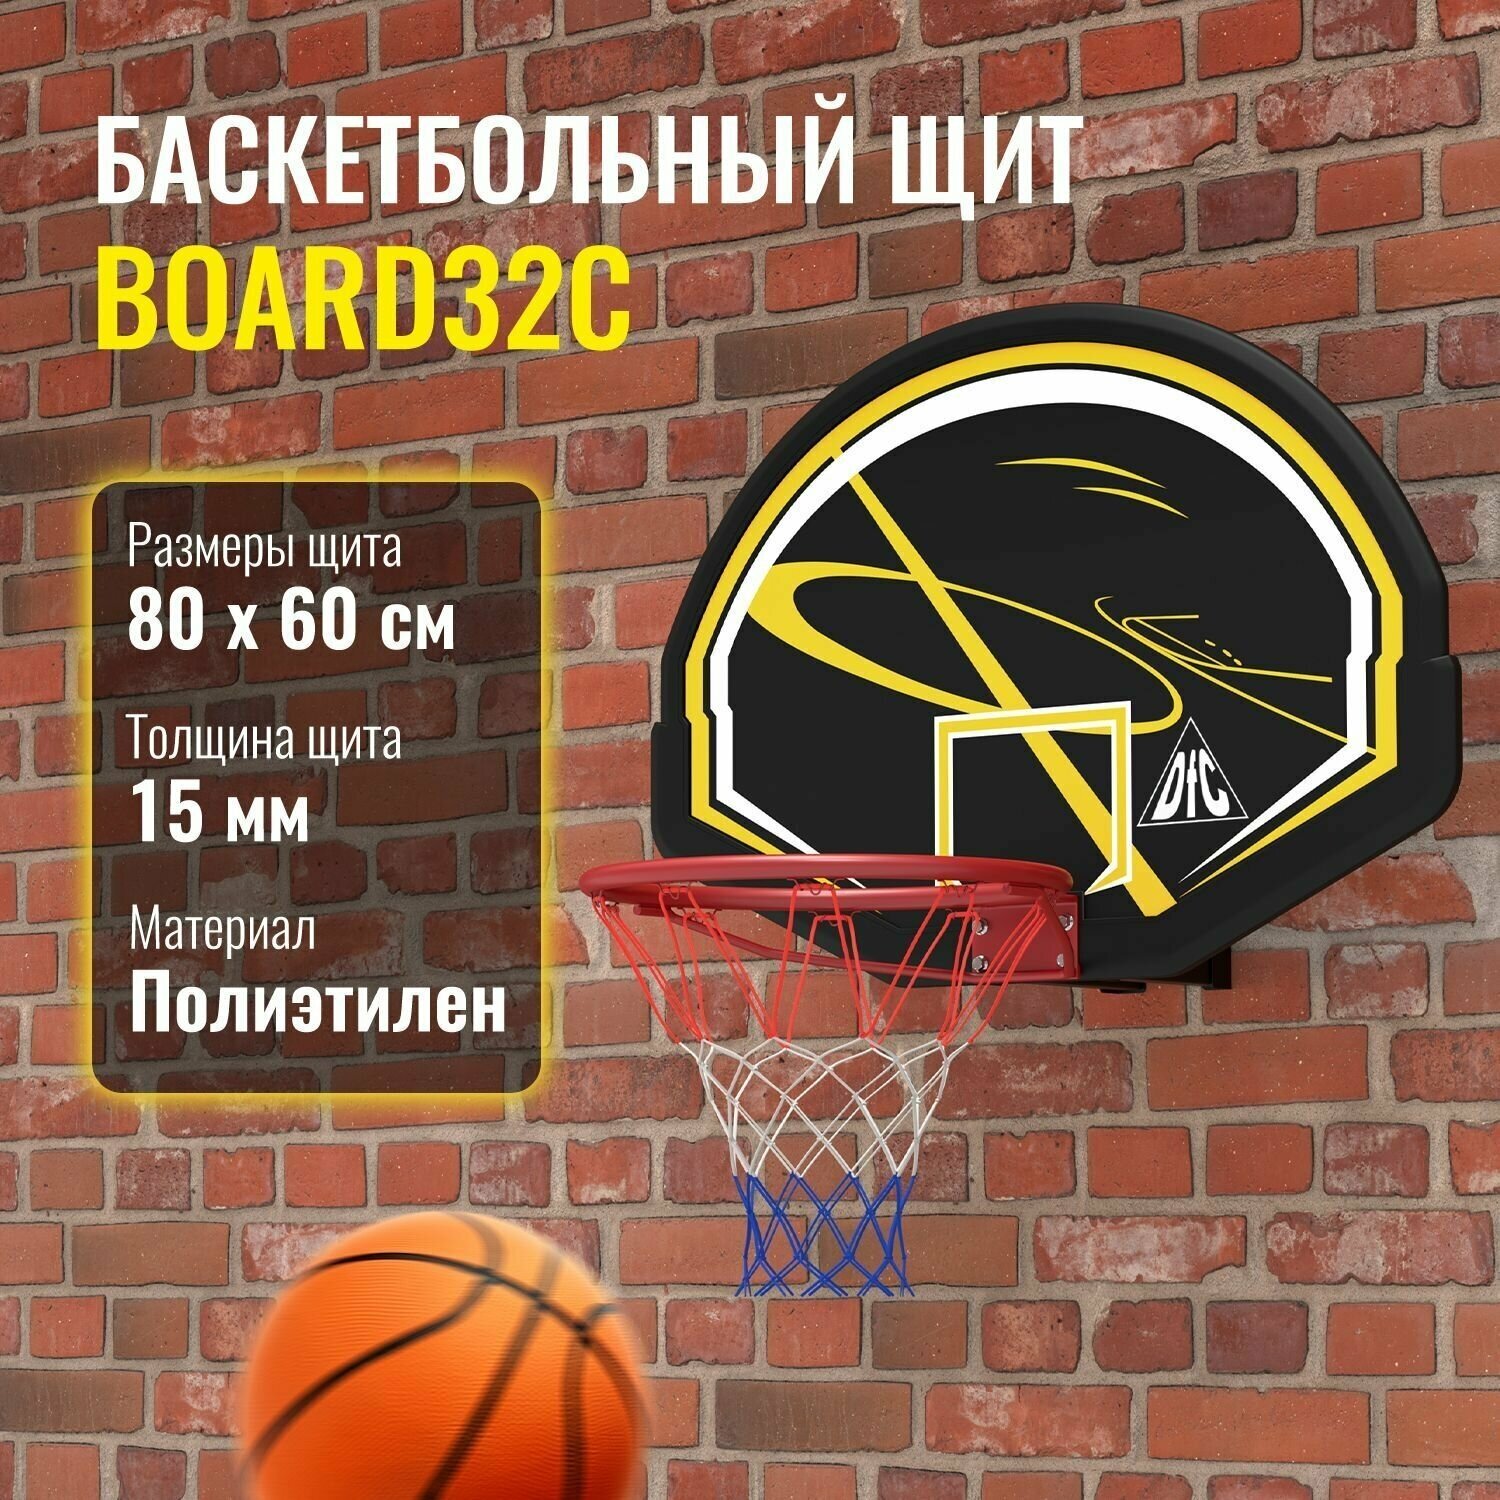 Баскетбольный щит без кольца DFC BOARD32C